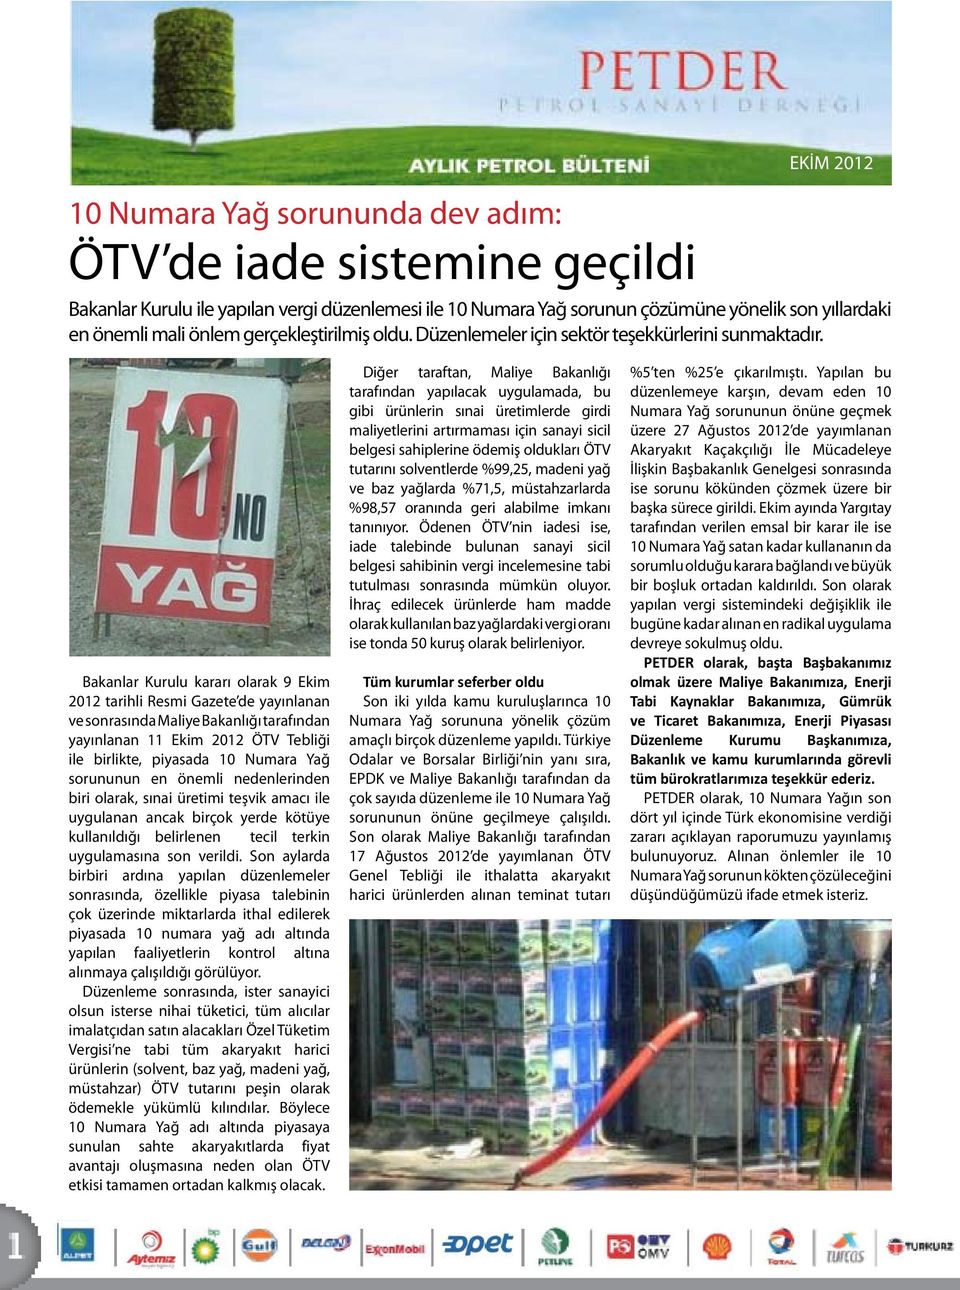 Bakanlar Kurulu kararı olarak 9 Ekim 2012 tarihli Resmi Gazete de yayınlanan ve sonrasında Maliye Bakanlığı tarafından yayınlanan 11 Ekim 2012 ÖTV Tebliği ile birlikte, piyasada 10 Numara Yağ